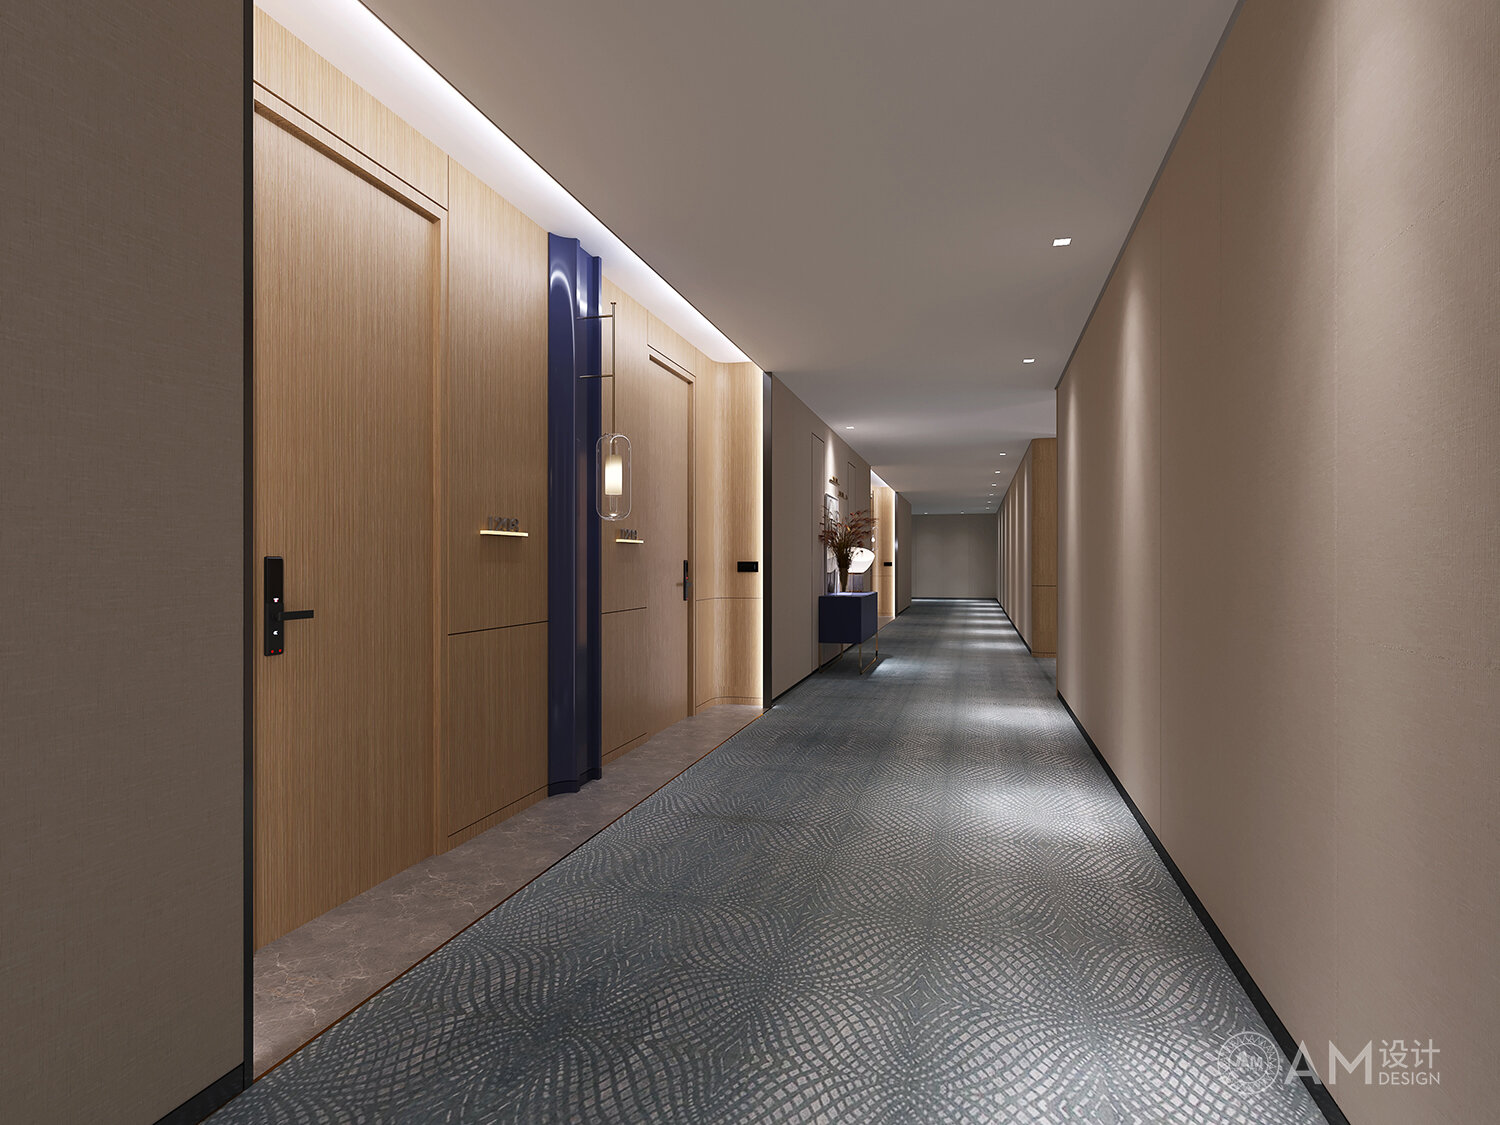 AM|Yuelai Hotel Corridor Design